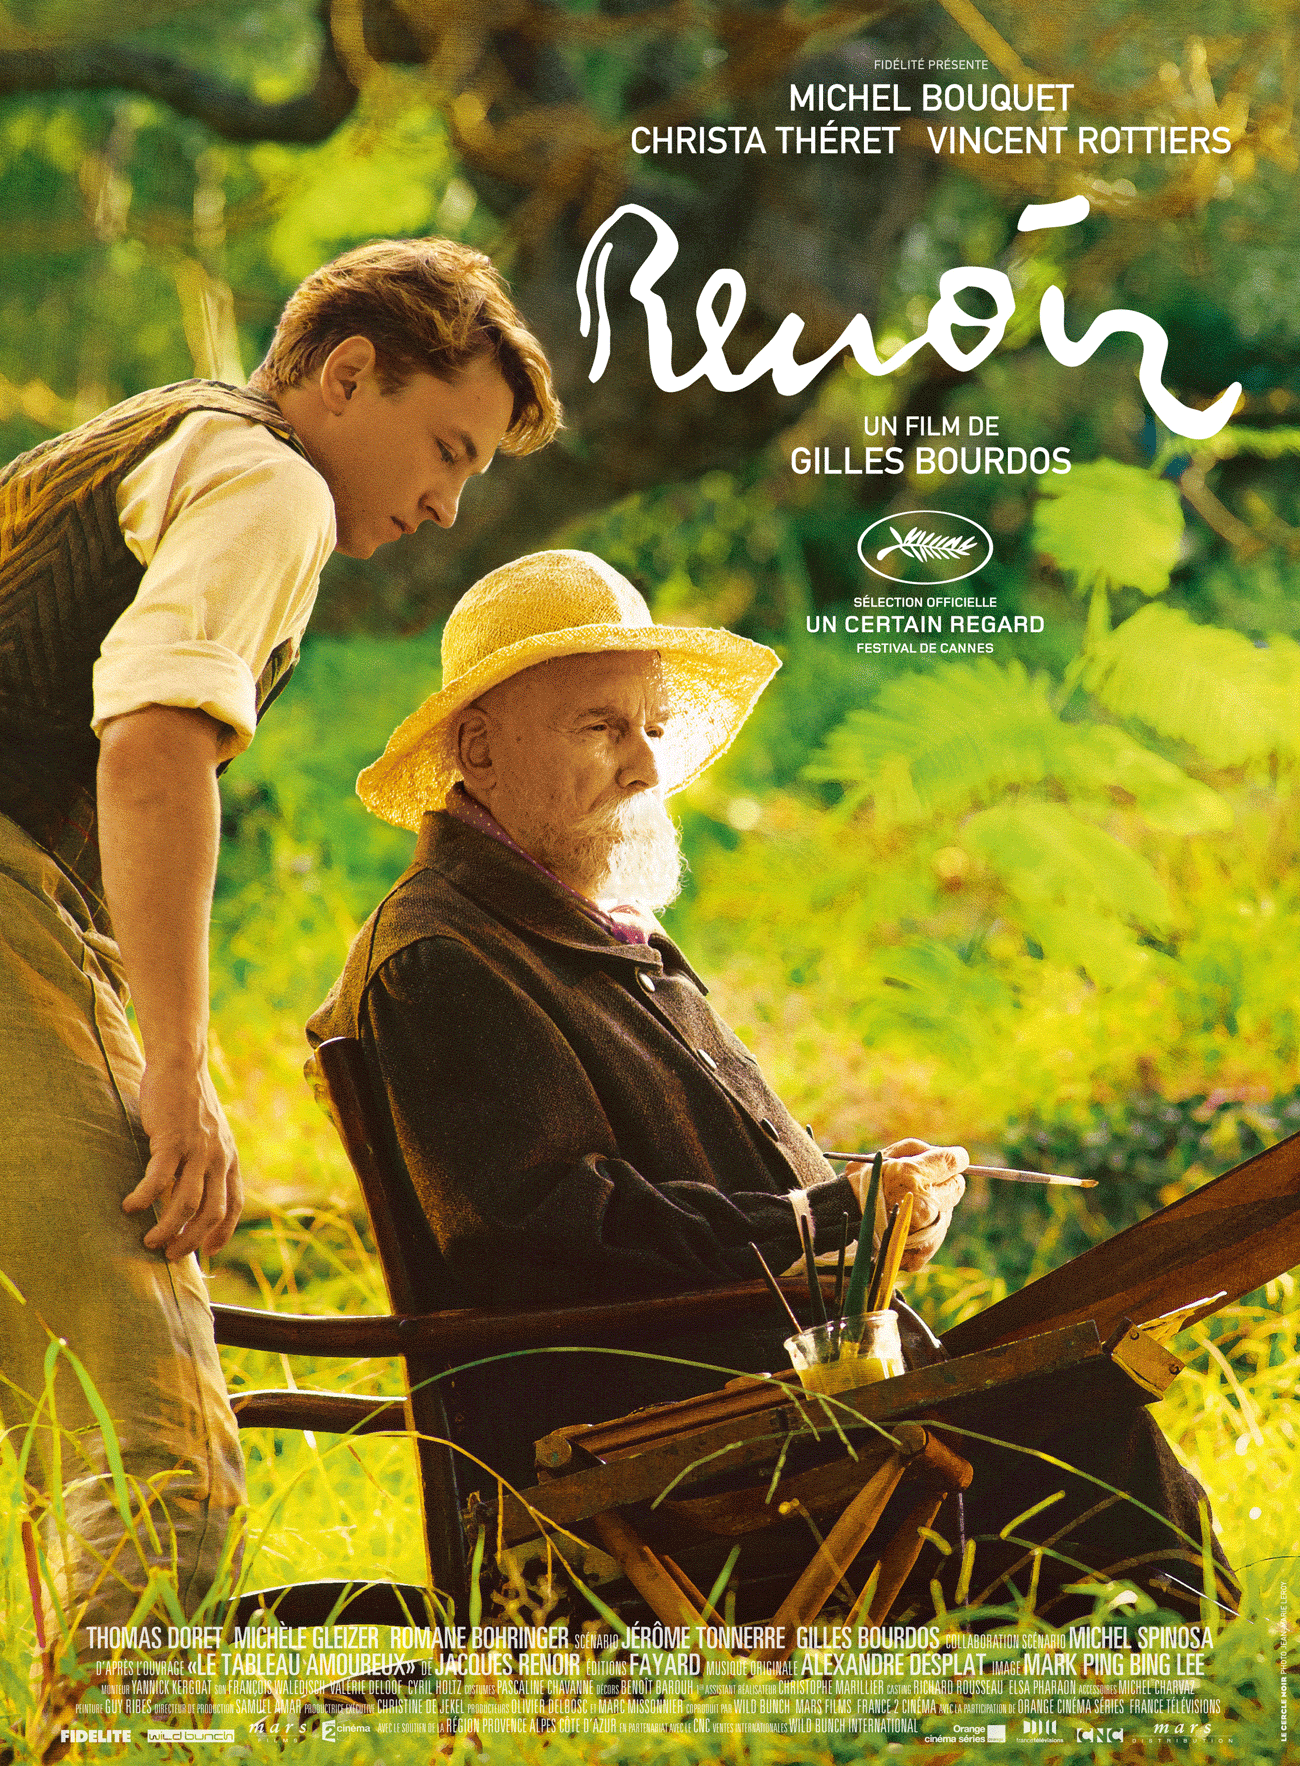 L'affiche du film "Renoir" de Gilles Bourdos. [marsfilms.com]